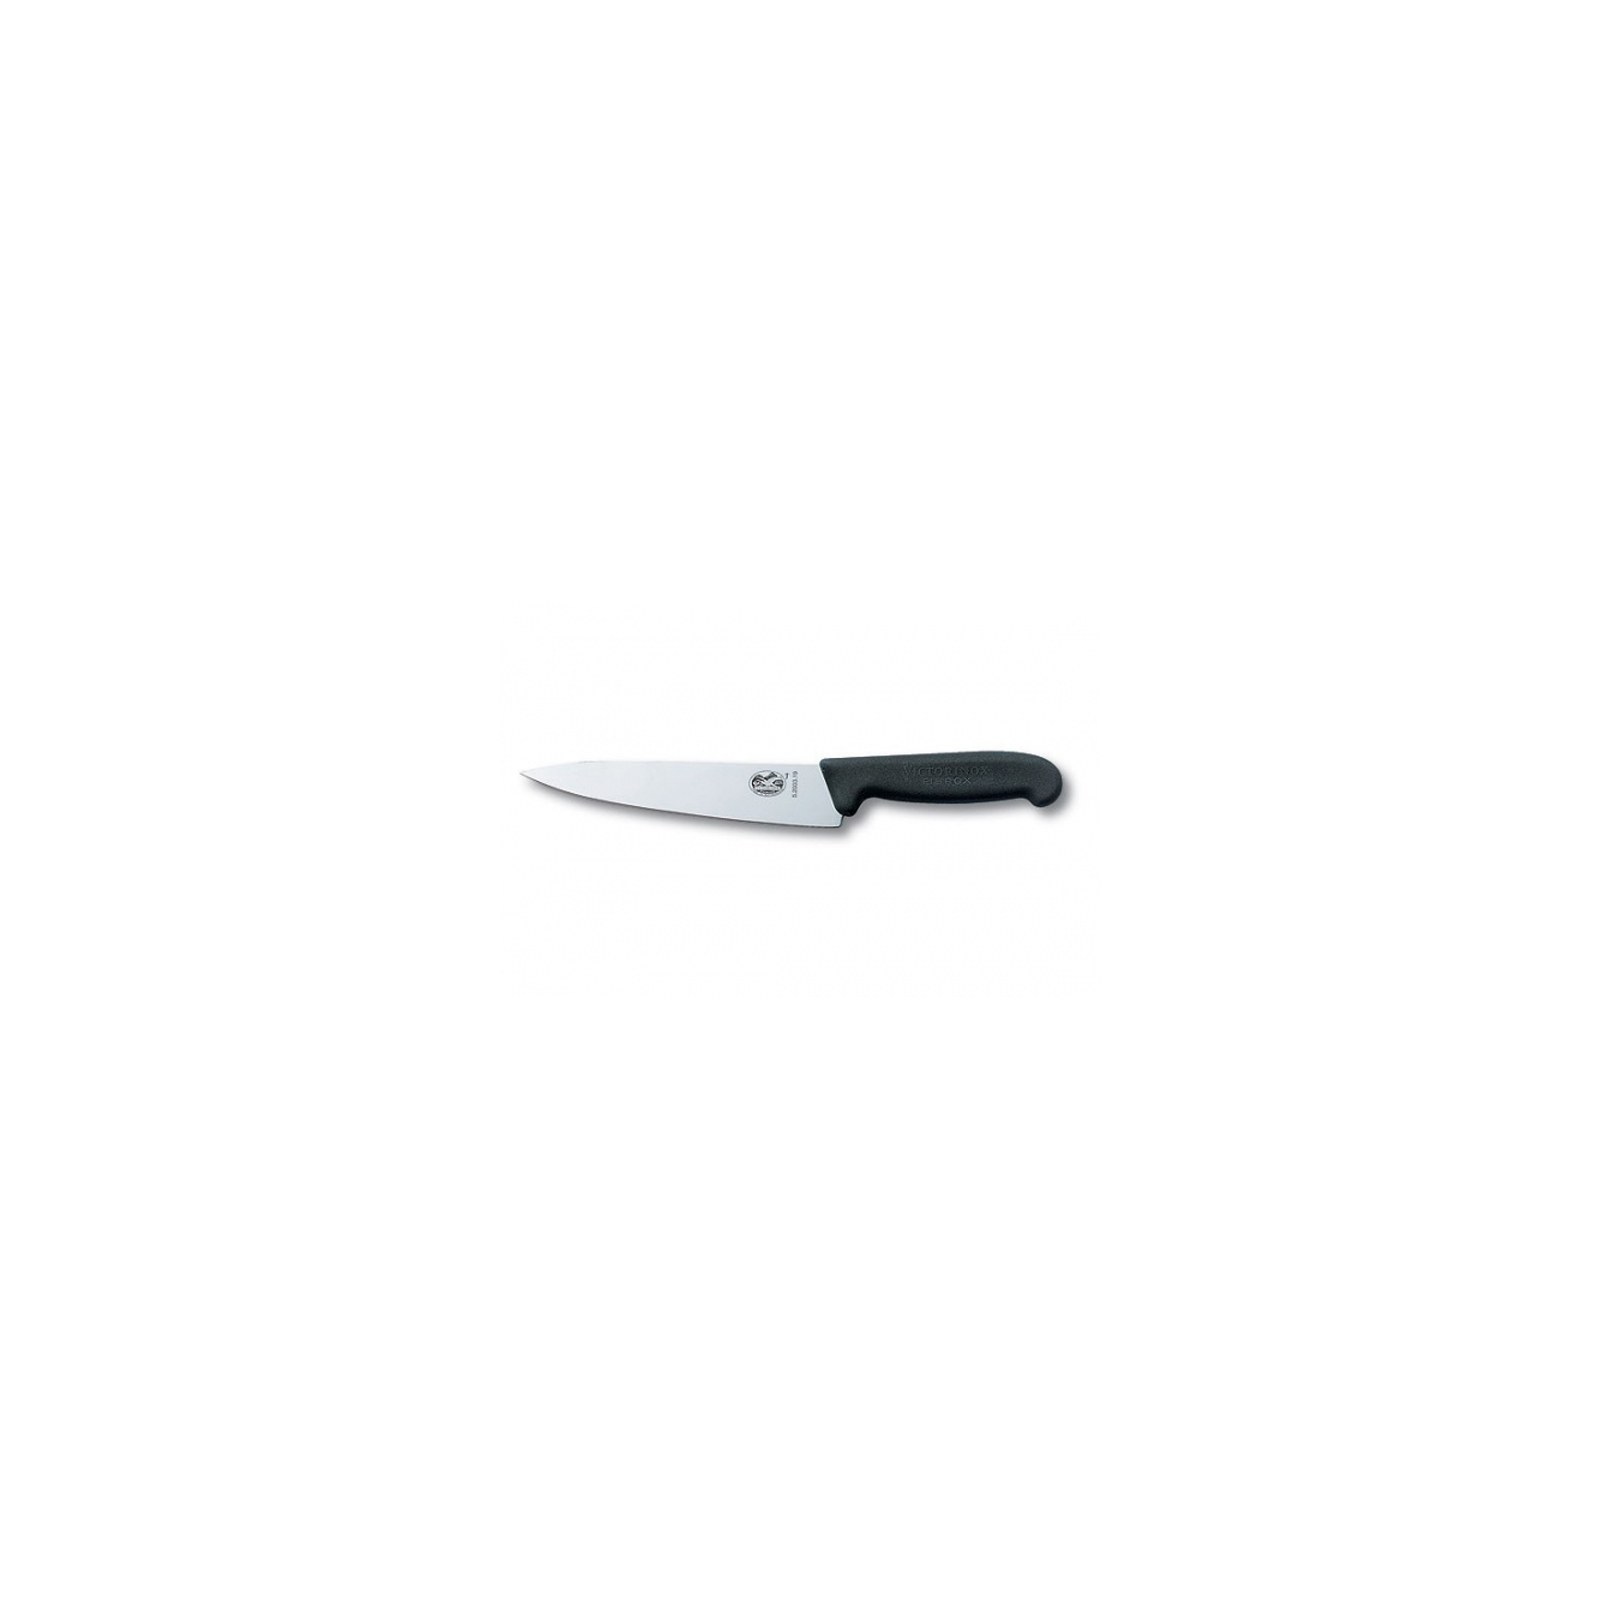 Кухонный нож Victorinox Fibrox разделочный 12 см, черный (5.2003.12)